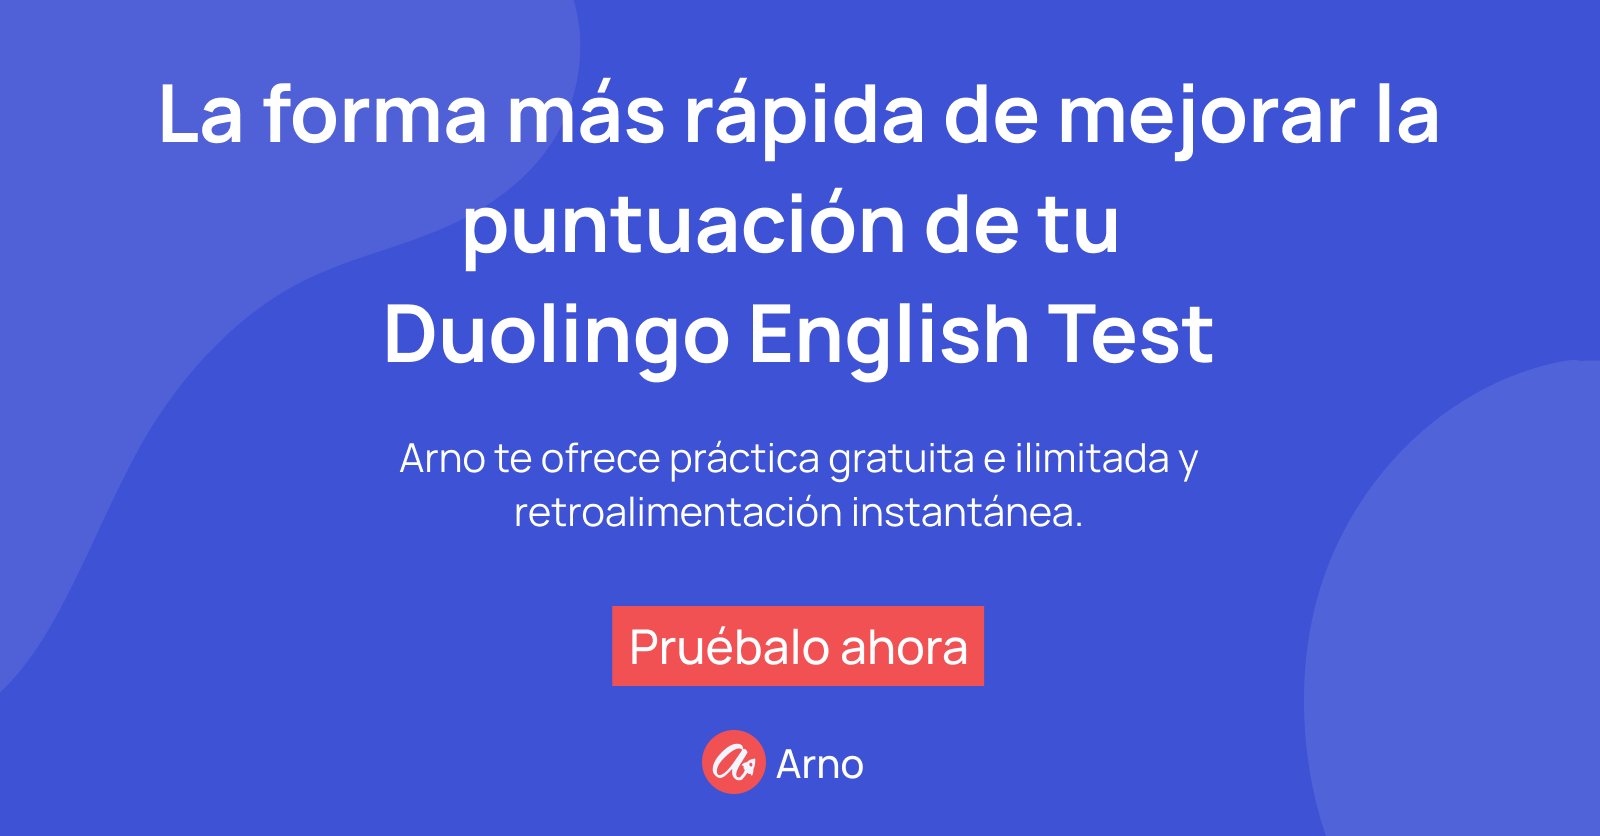  La imagen dice la forma más rápida de mejorar tu puntuación en el examen de inglés de Duolingo.